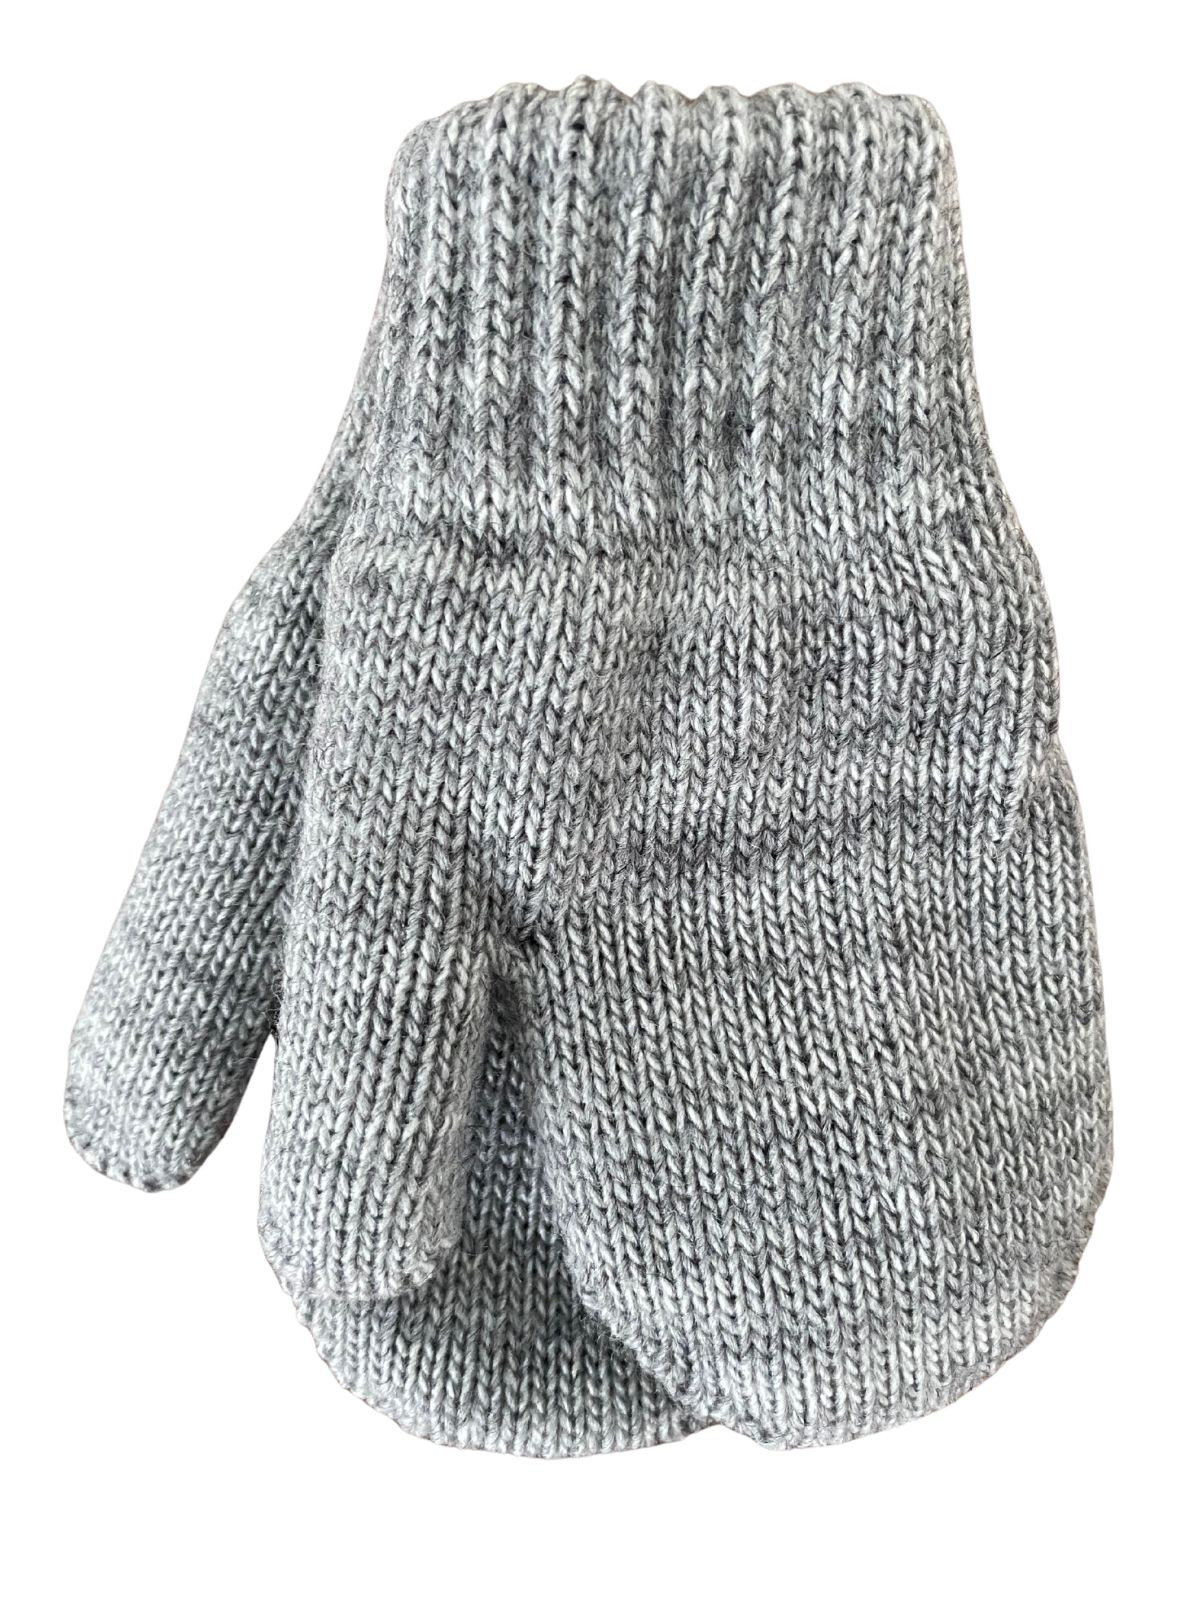 Mitaines tricotés pour enfant 2-3 ans, Basic_gris